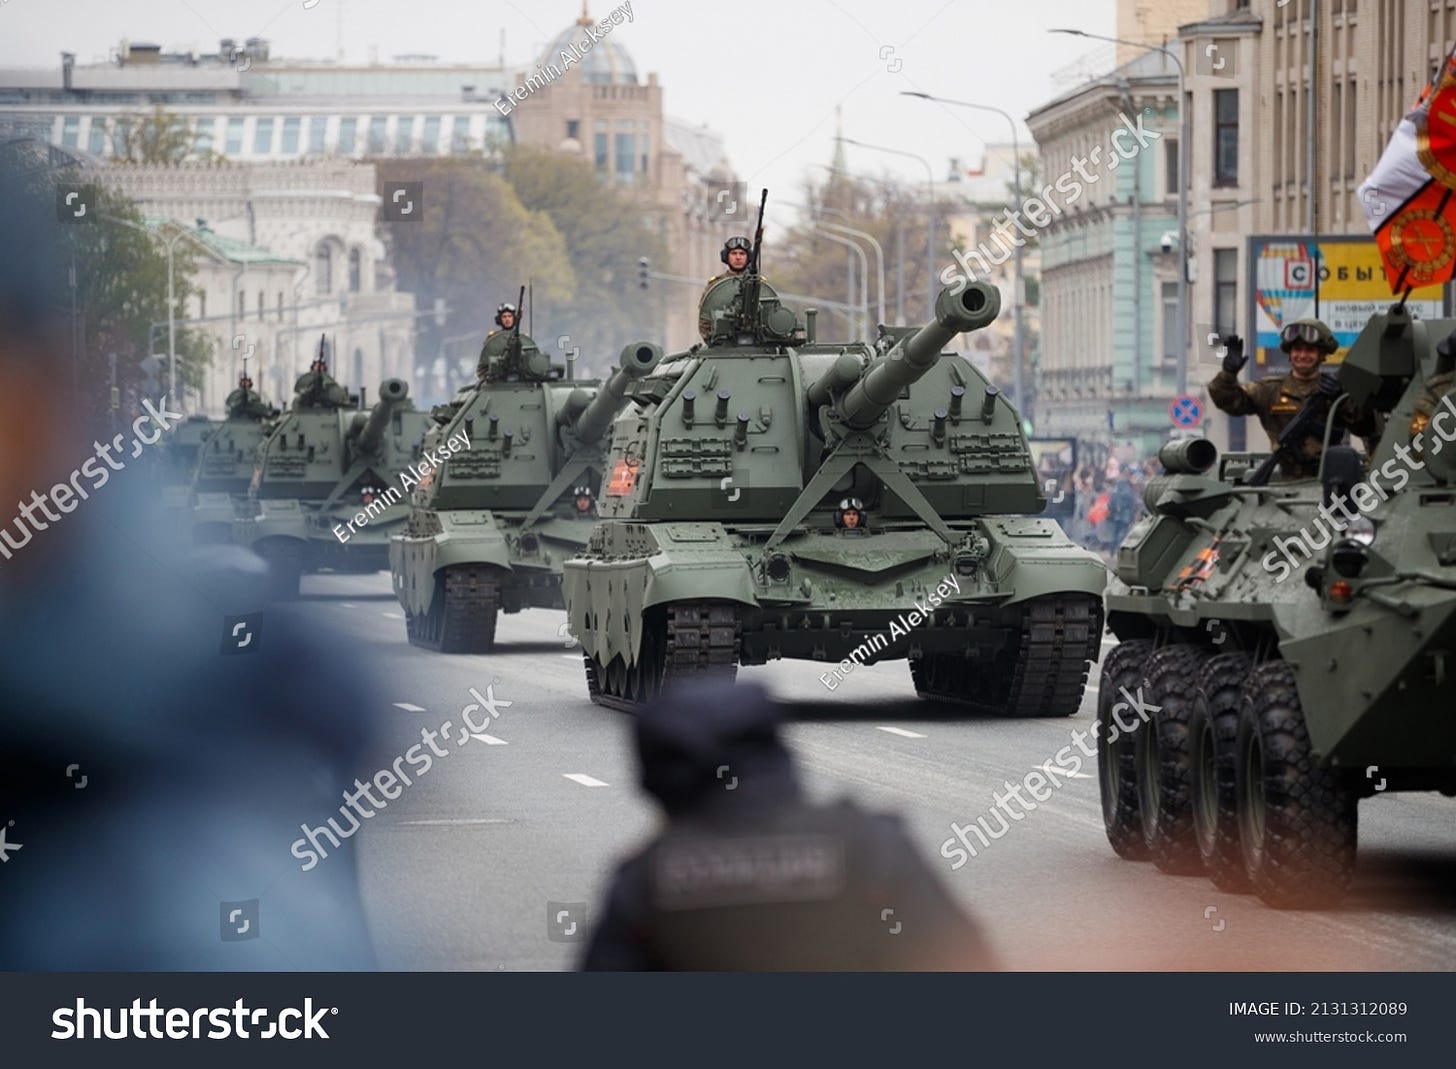 RUSSIE, MOSCOU - 9 MAI 2021 : Des unités de l'armée russe passent par là pendant une parade militaire. Aujourd'hui, la Russie célèbre le 76ème anniversaire de la victoire de l'Allemagne nazie lors de la Seconde Guerre mondiale.